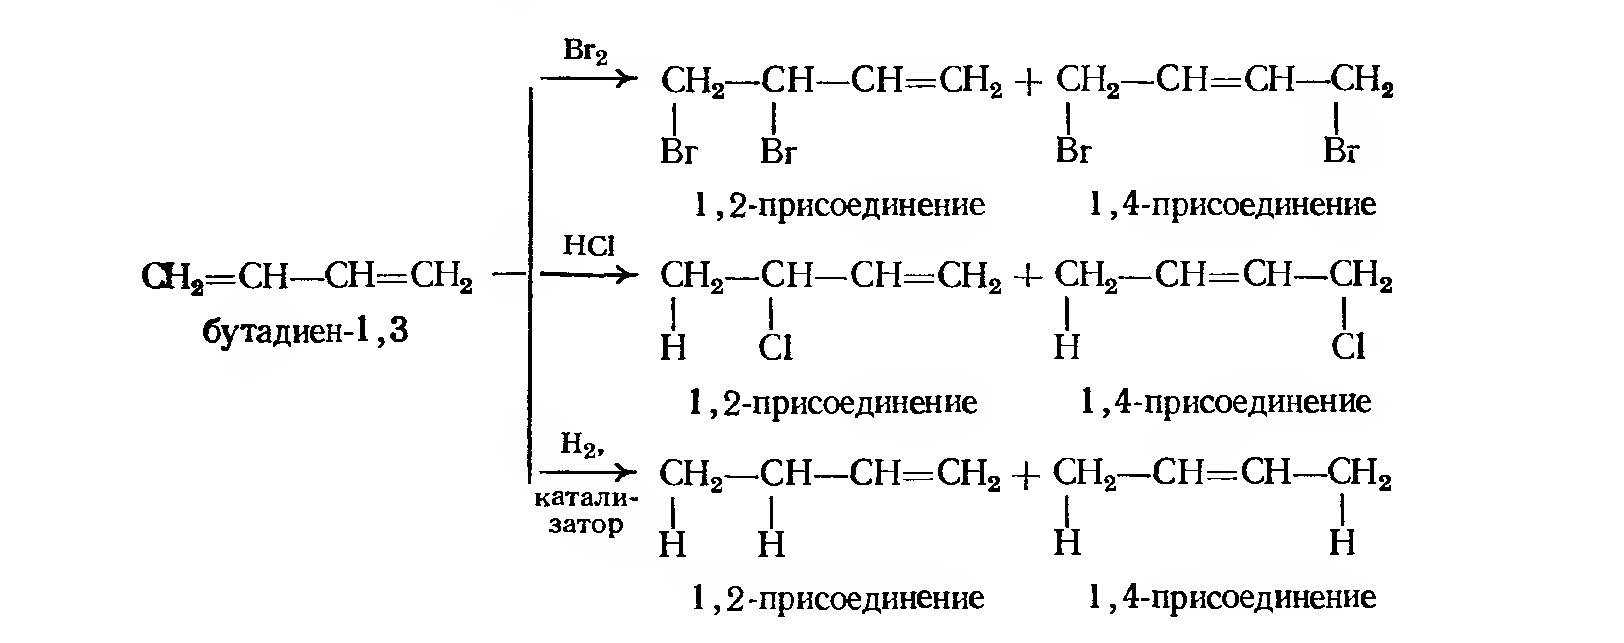 Из дивинила бутан. Схема полимеризации хлоропрена. Присоединение hbr к бутадиену 1,3. Гидробромирование бутадиена-1.3. Бутадиен 13 и бромоводород.